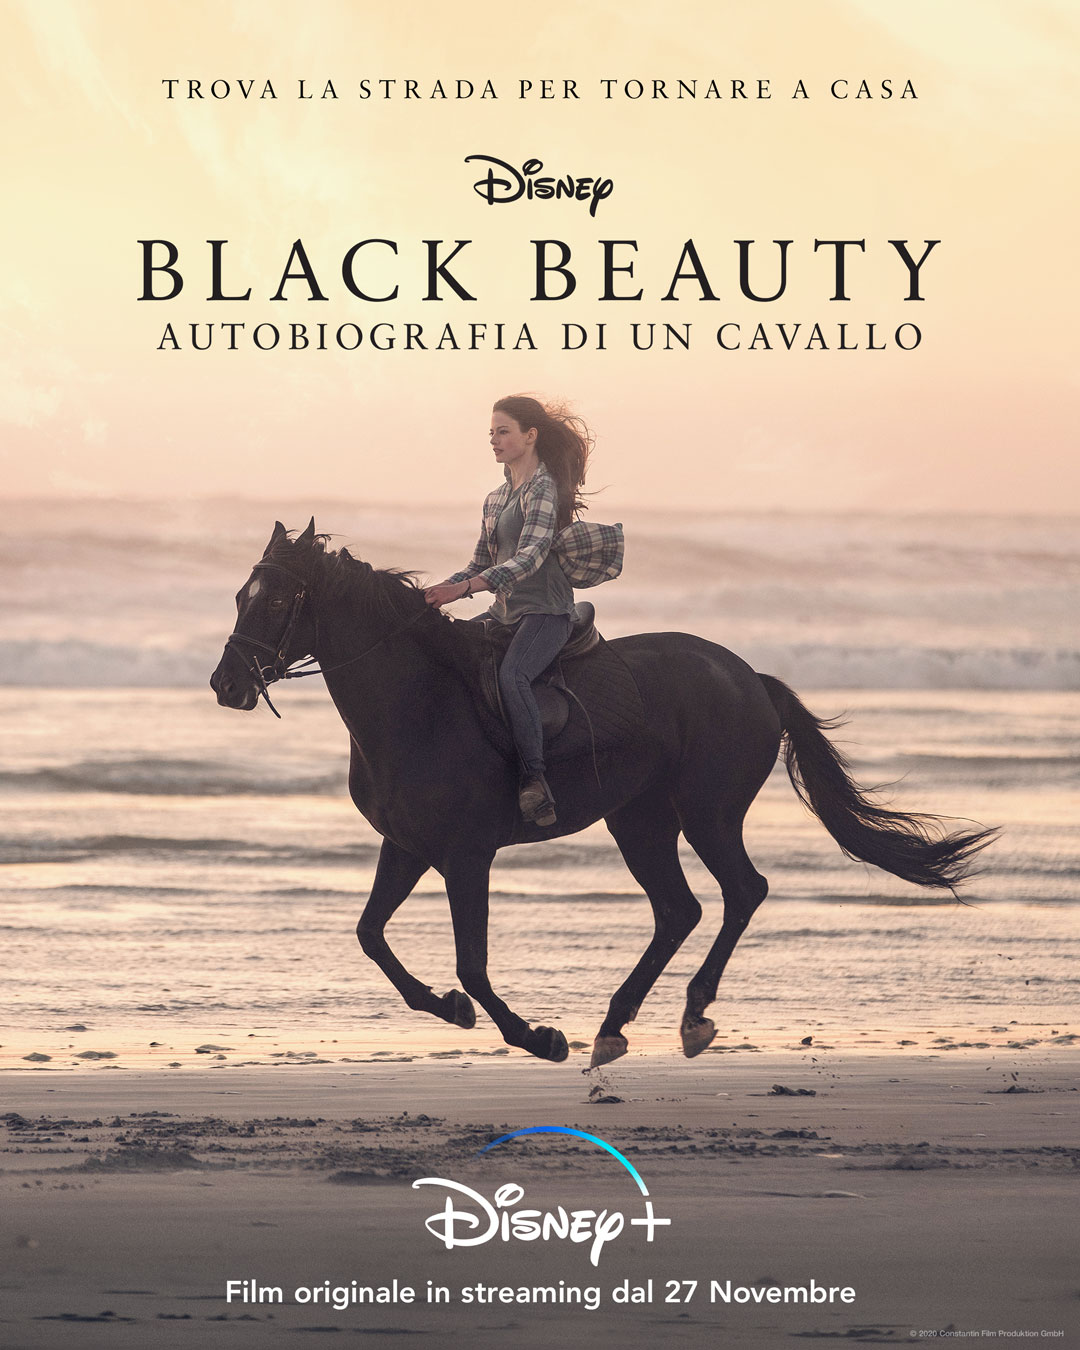 Black Beauty: Autobiografia di un cavallo